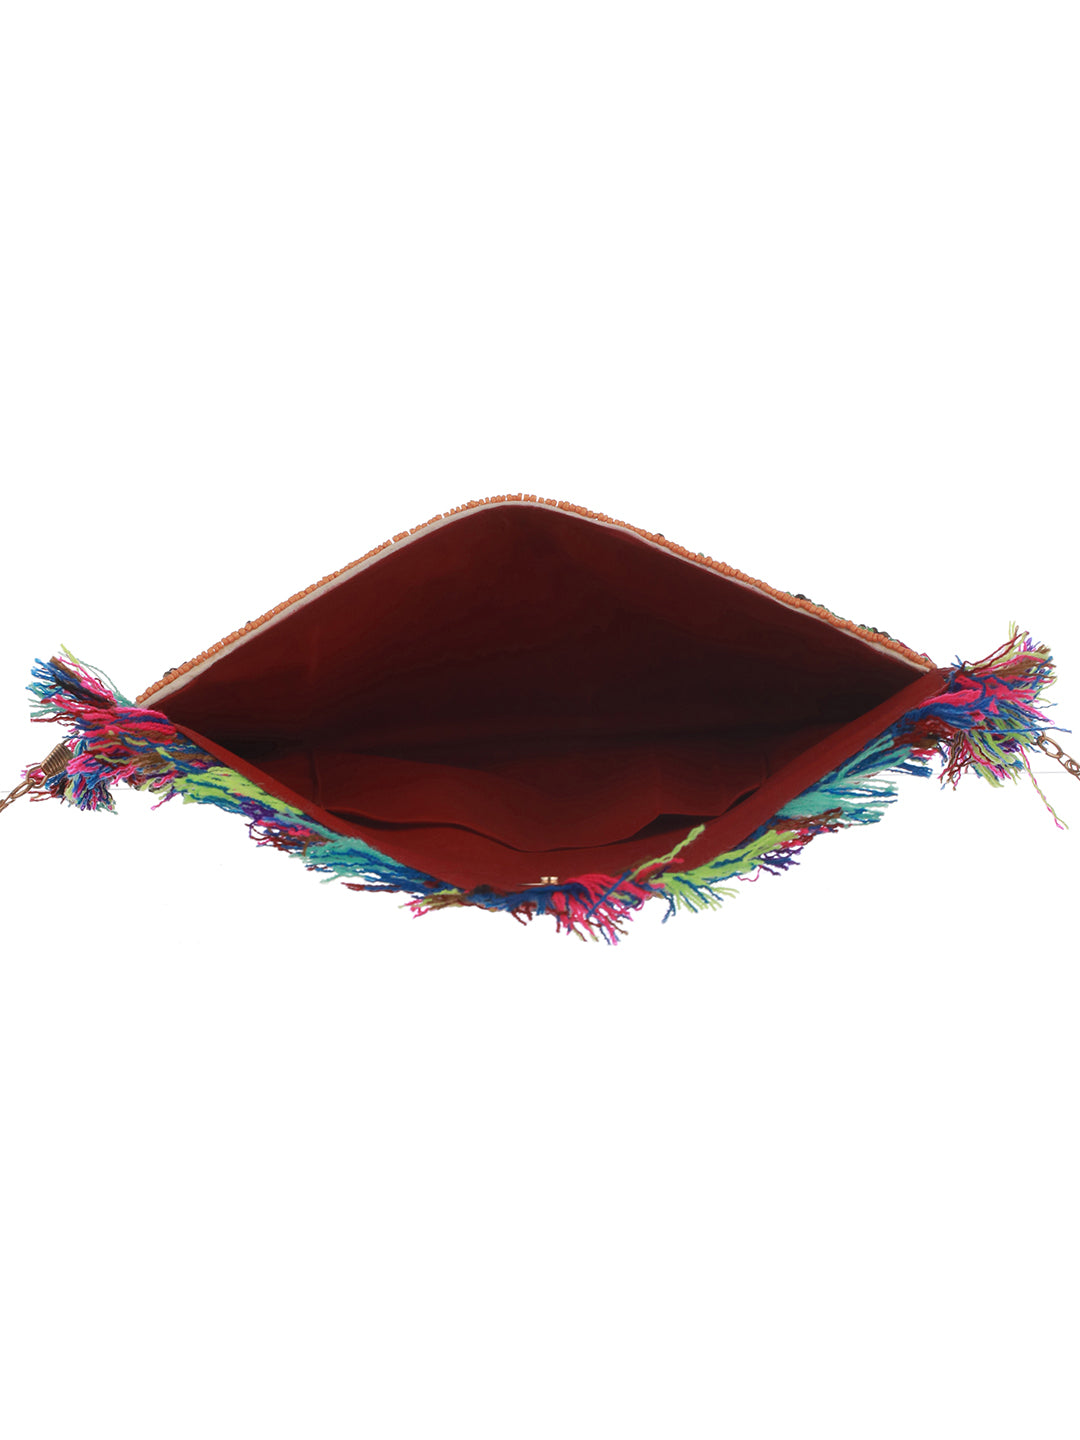 Gul-i-stunning Multicolor Embellished Sling Bag